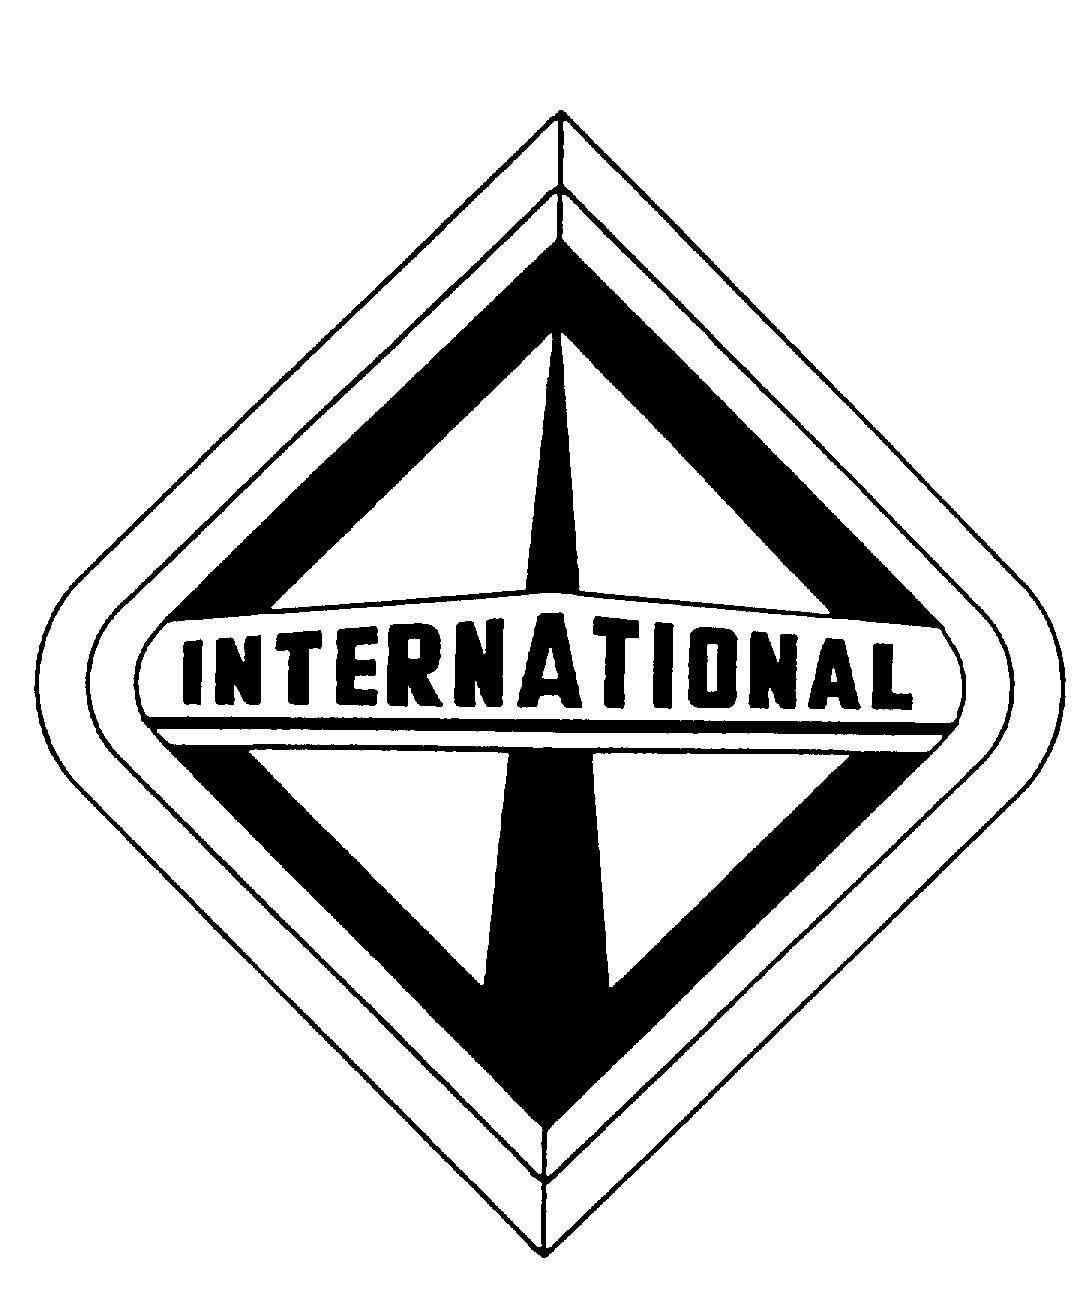 International Truck Logo - International truck Logos